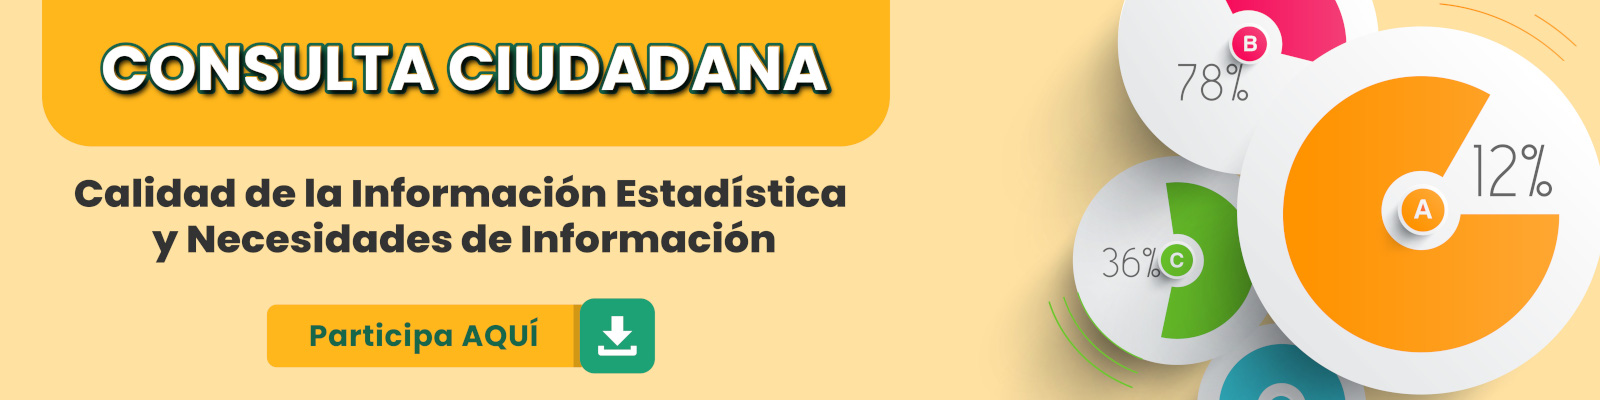 Banner Consulta Ciudadana Calidad de la Información Estadística y Necesidades de Información